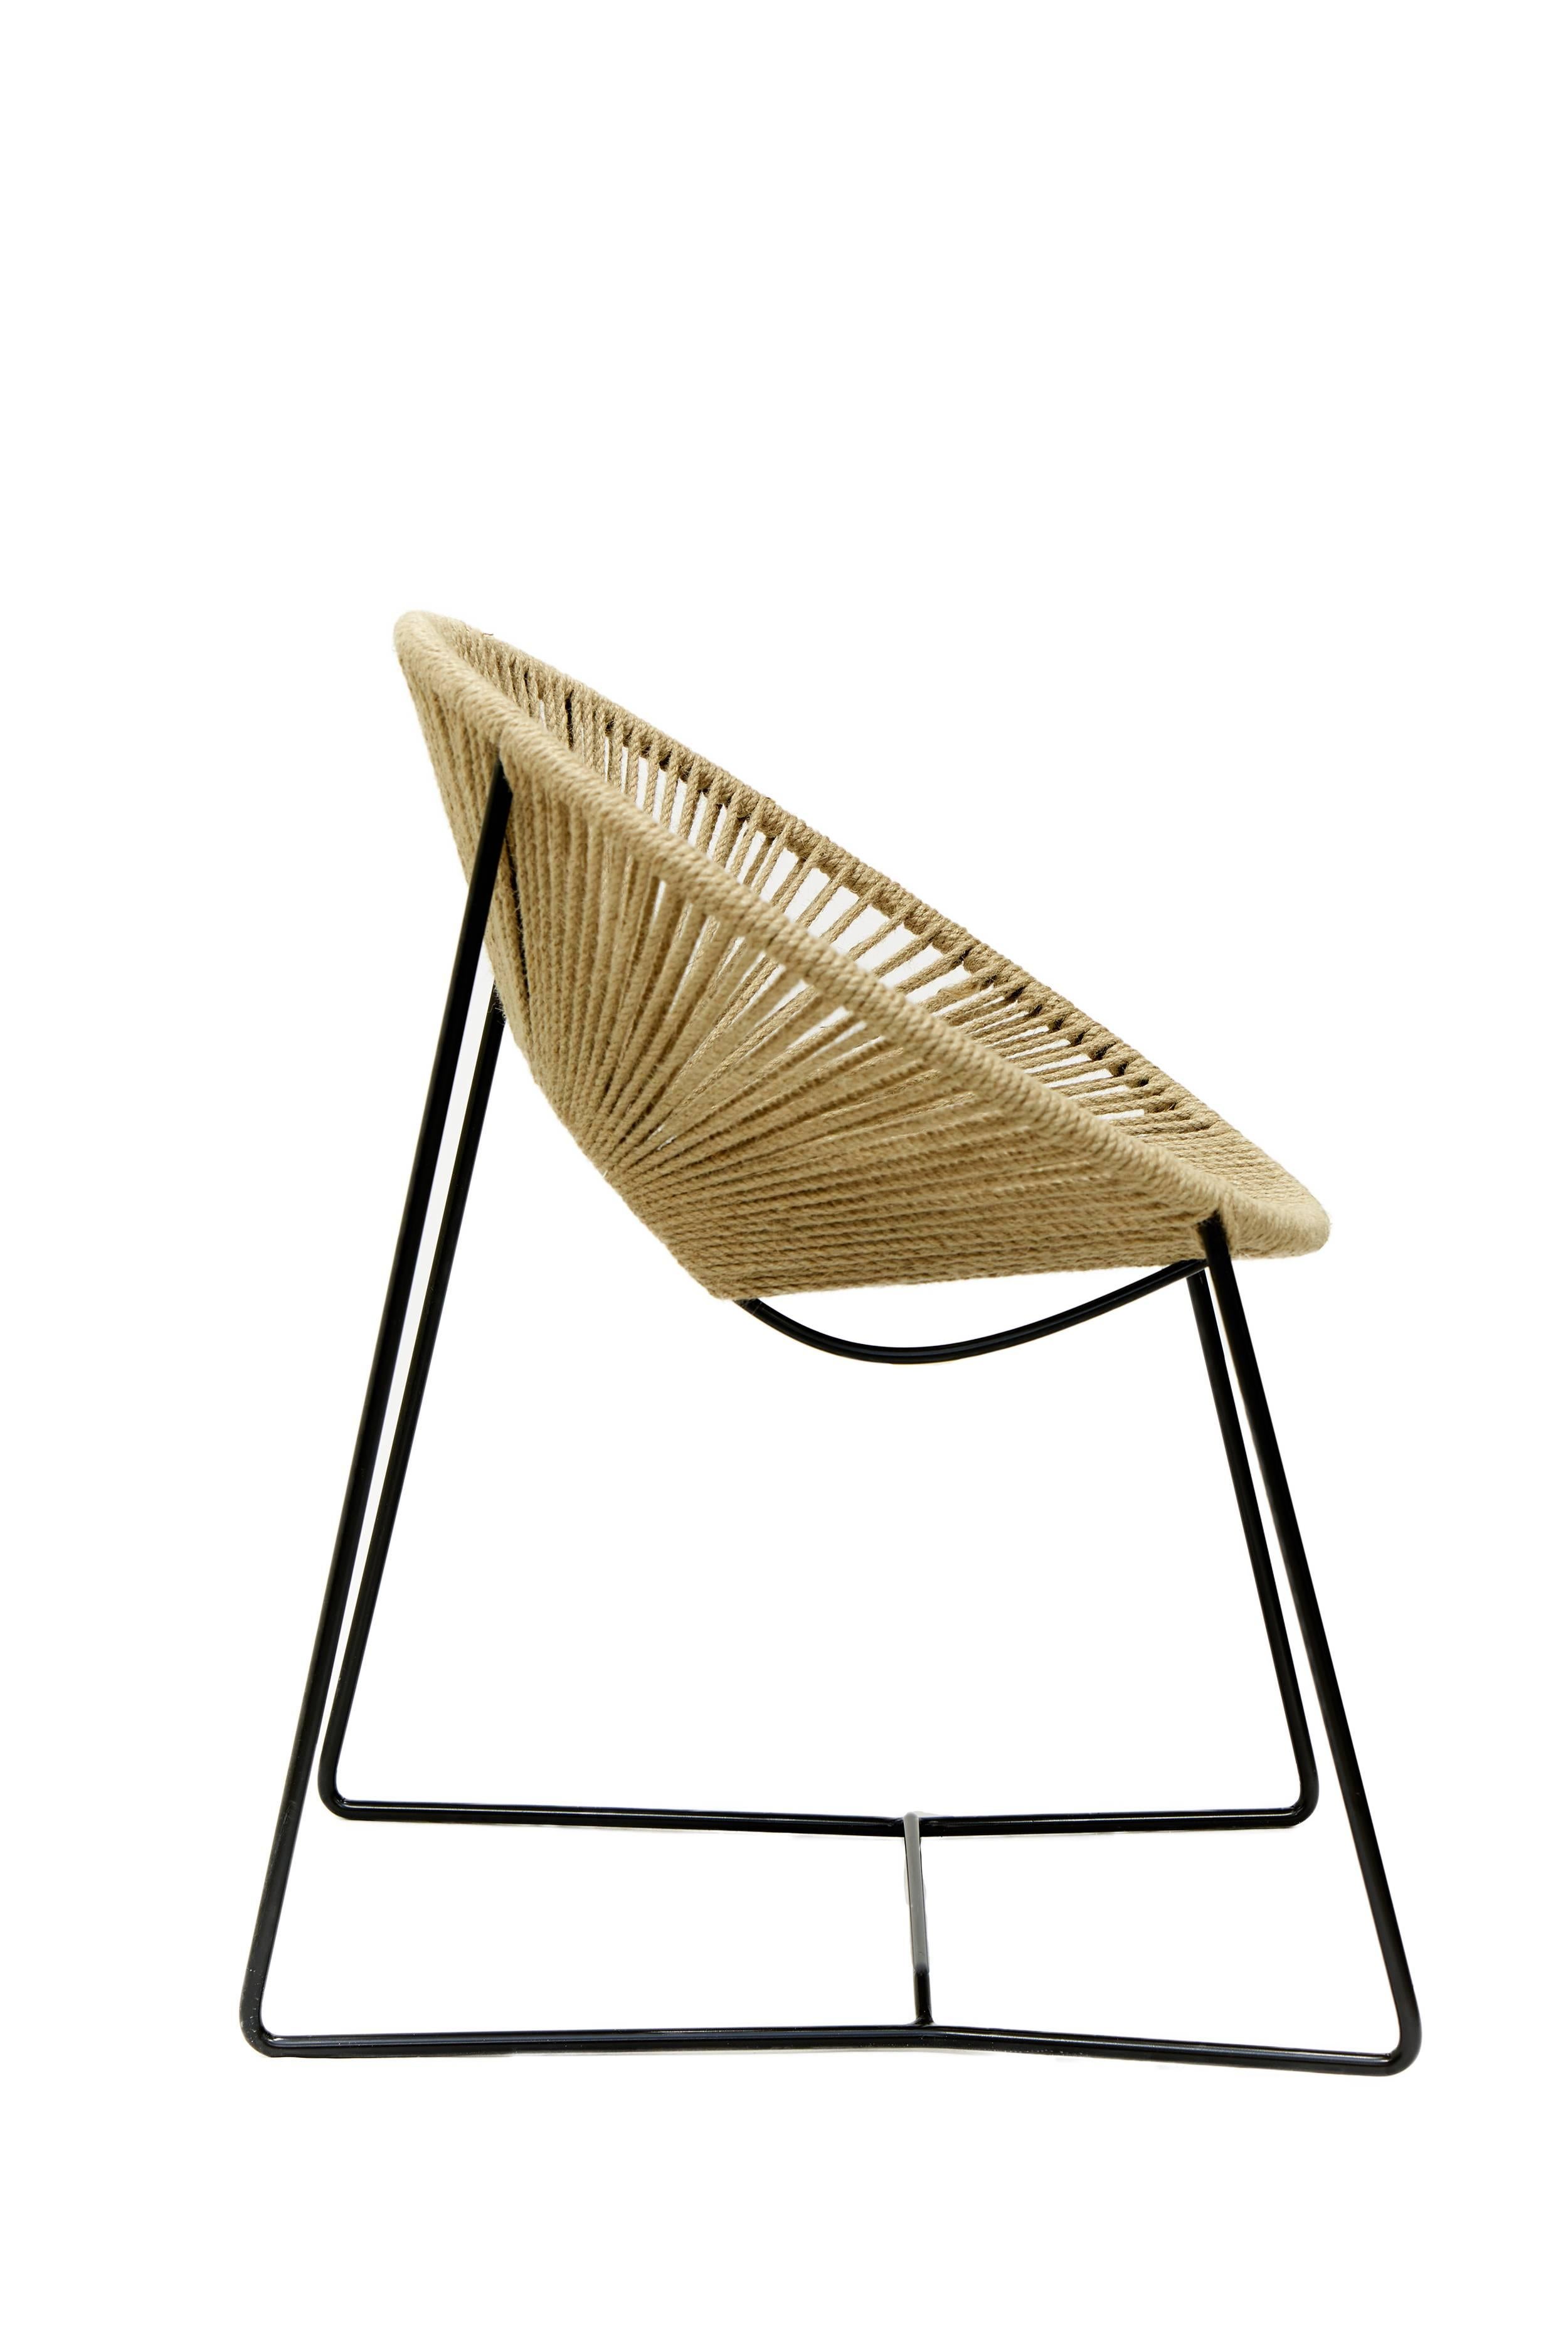 Cette chaise de salle à manger tropicale Cali tissée à la main est une création unique de Leon Leon Design/One de Mexico, une version moderne de la célèbre chaise Acapulco. Son matériau de tissage est composé de fibres végétales organiques